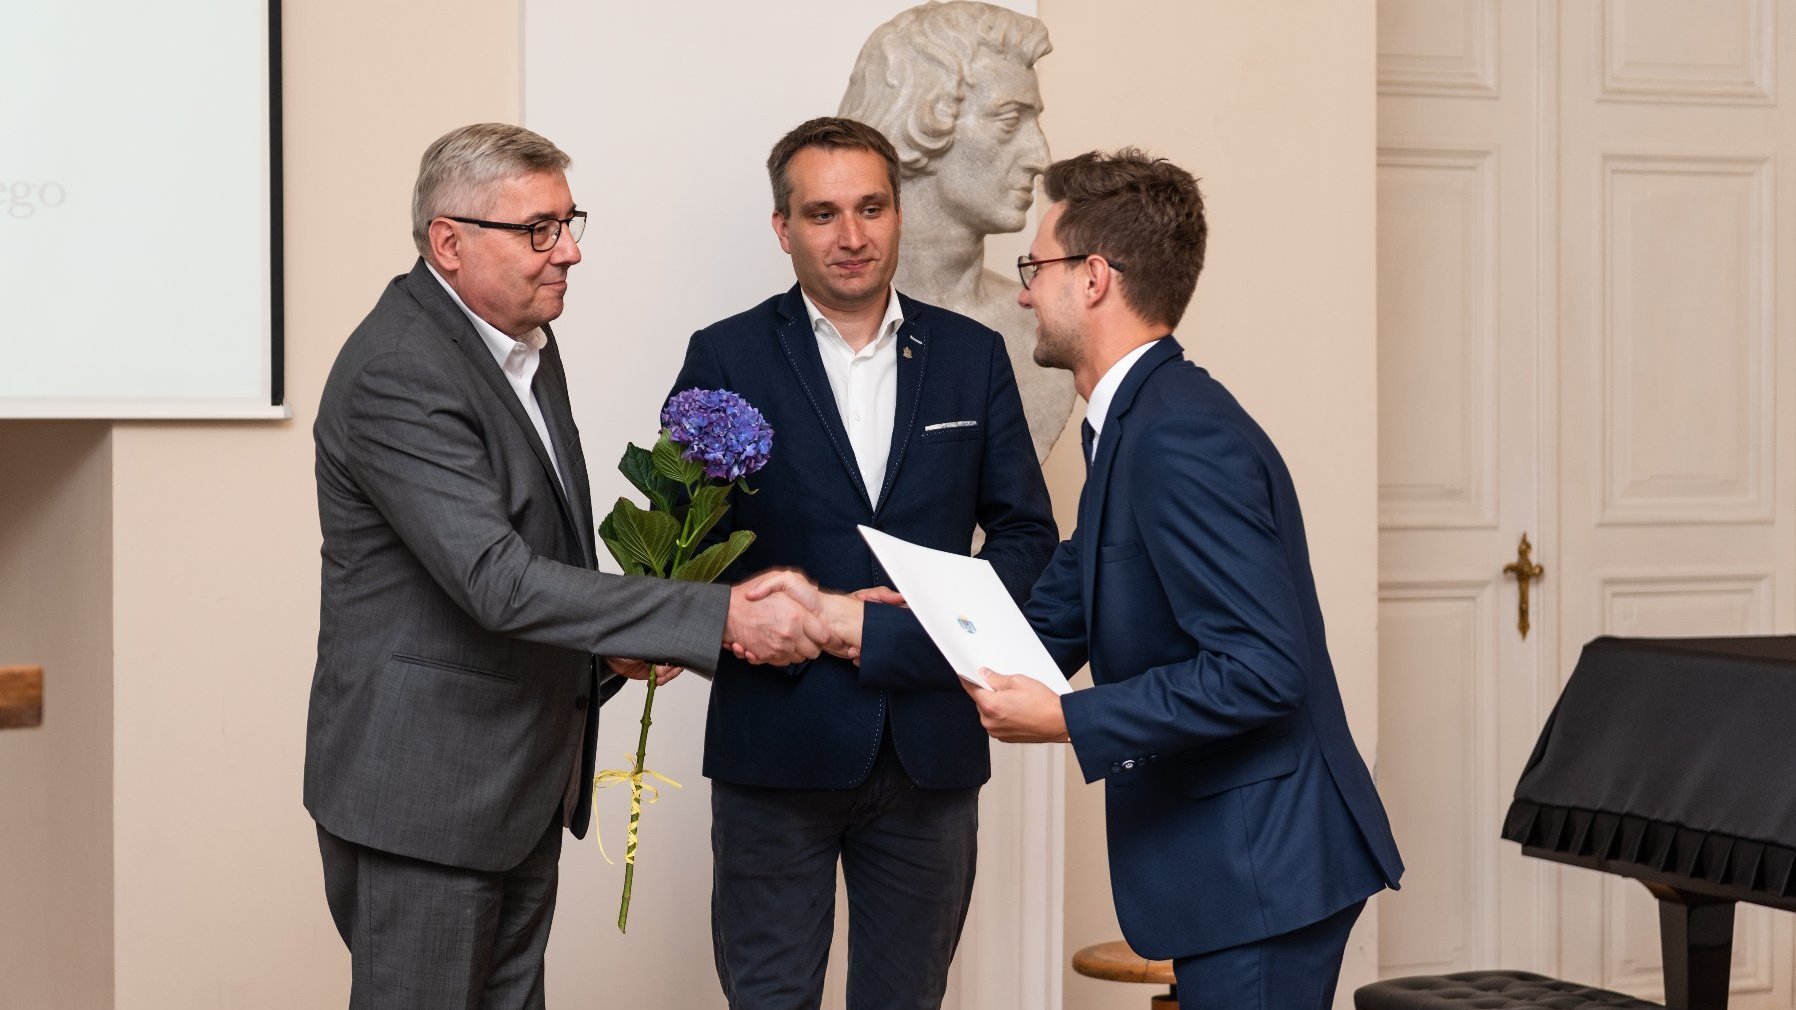 Na zdjęciu zastępca prezydenta miasta i przewodniczący rady miasta wręczają dyplom stypendyście